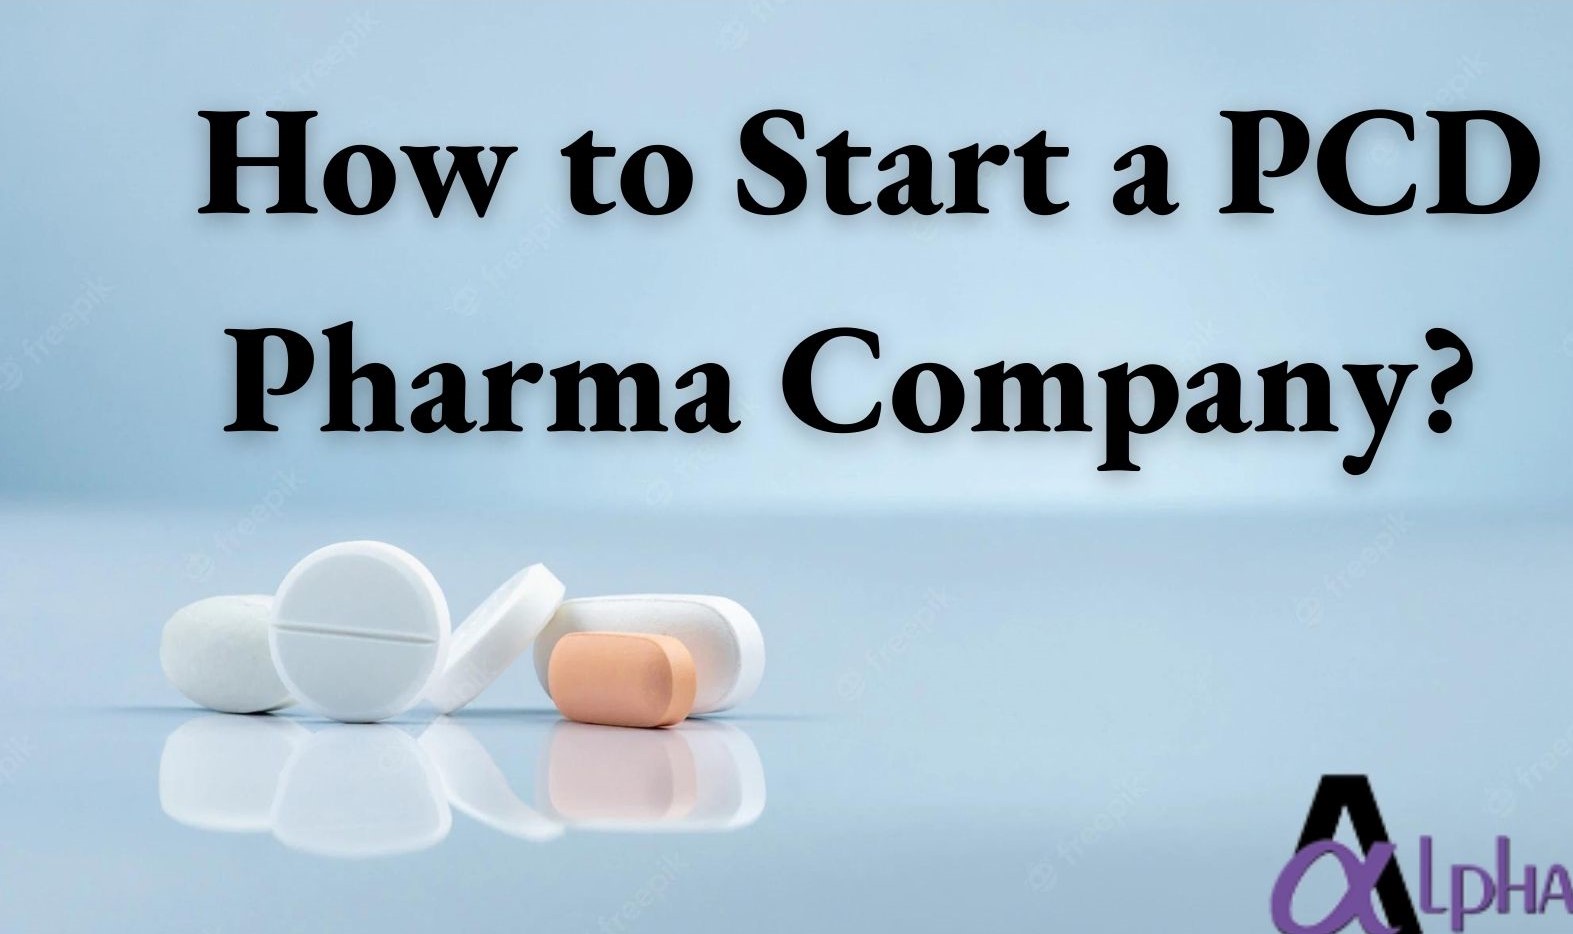 How to Start a PCD Pharma Company?